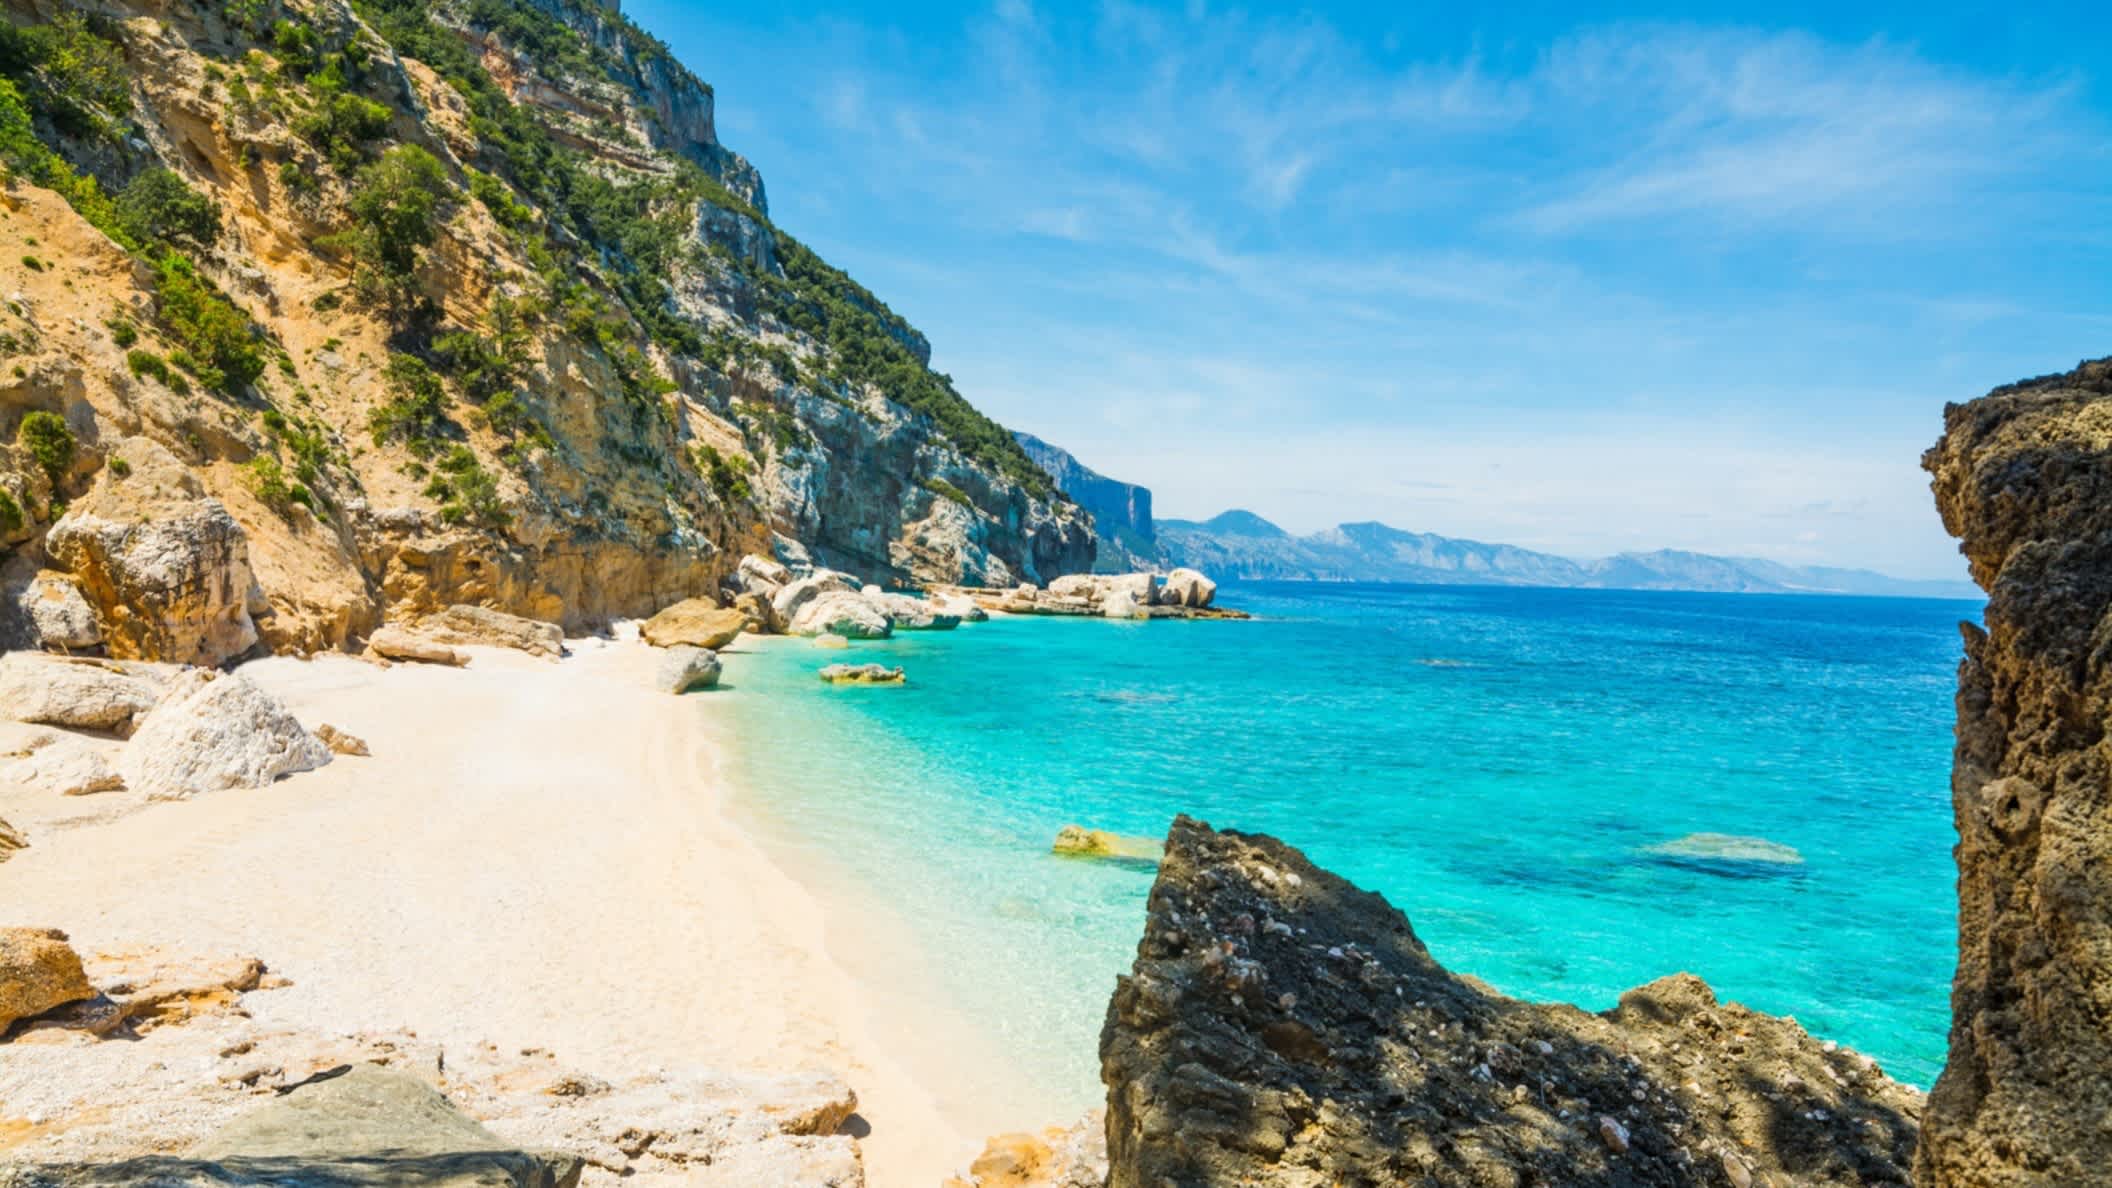 Felsen und weißer Sand in Cala Mariolu, Sardinien, Italien mit Überblick über die Bucht und die Steinklippen sowie das blaue Meer.

